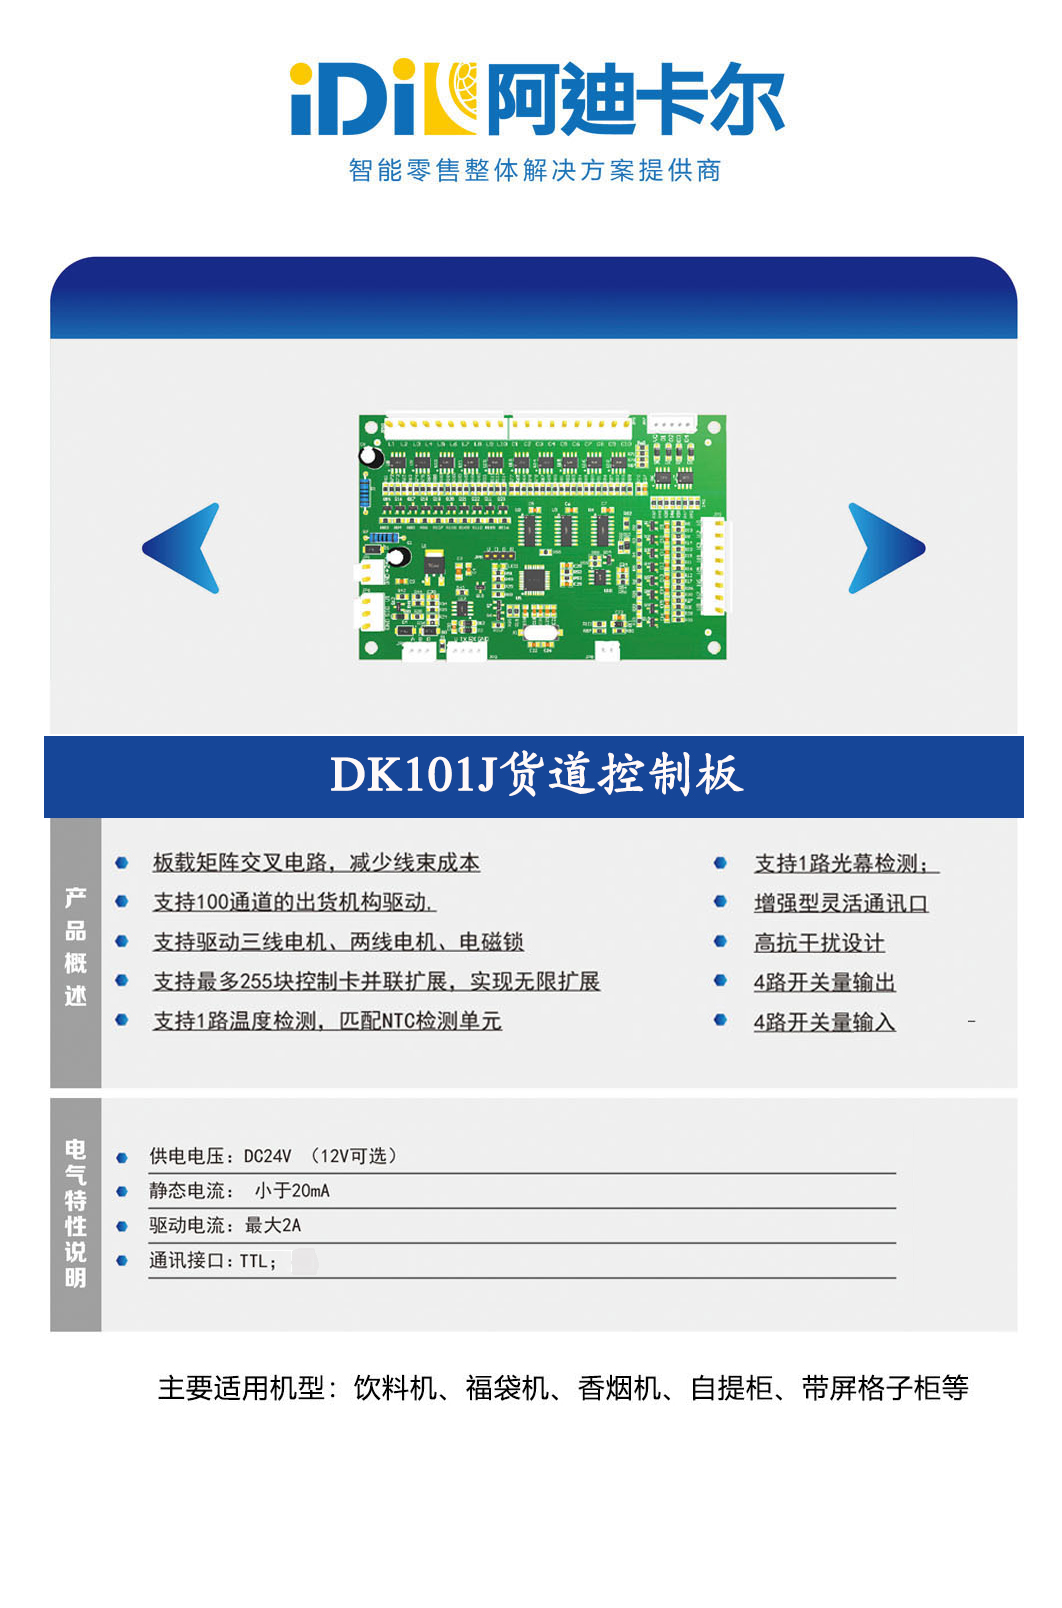 DK101驱动板